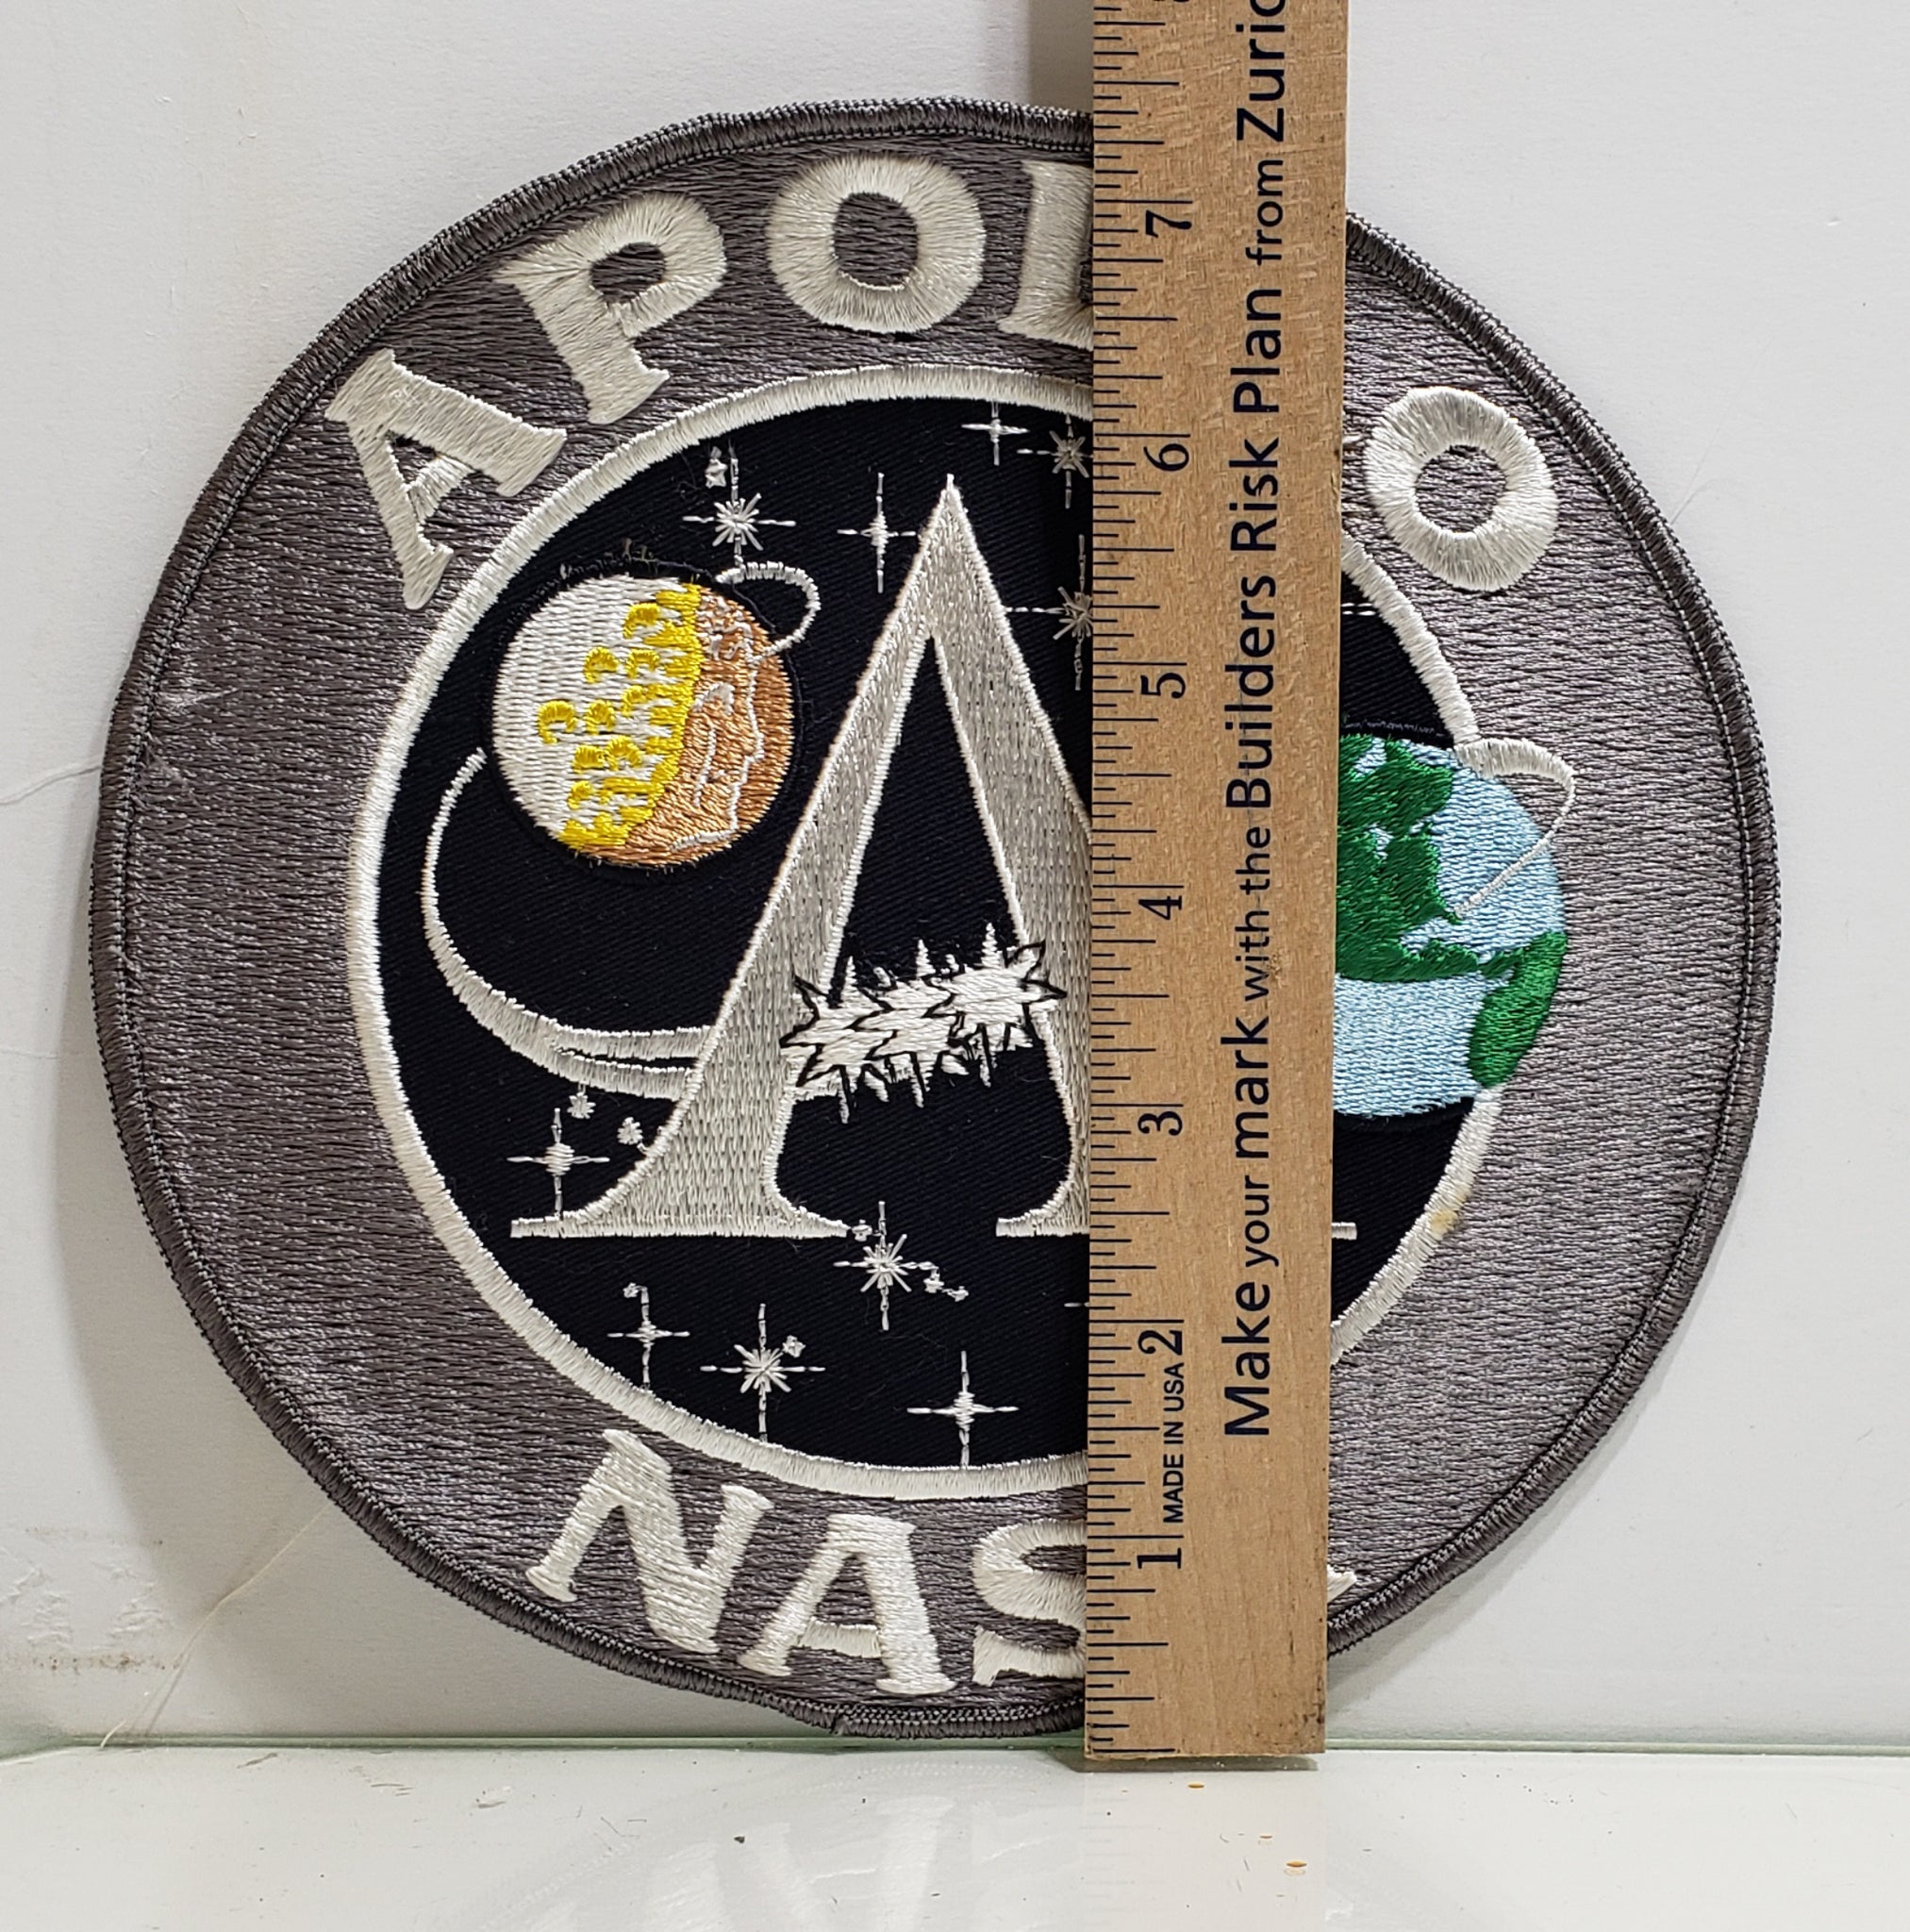 Apollo Nasa Program Nasa embroidered patch, velcro